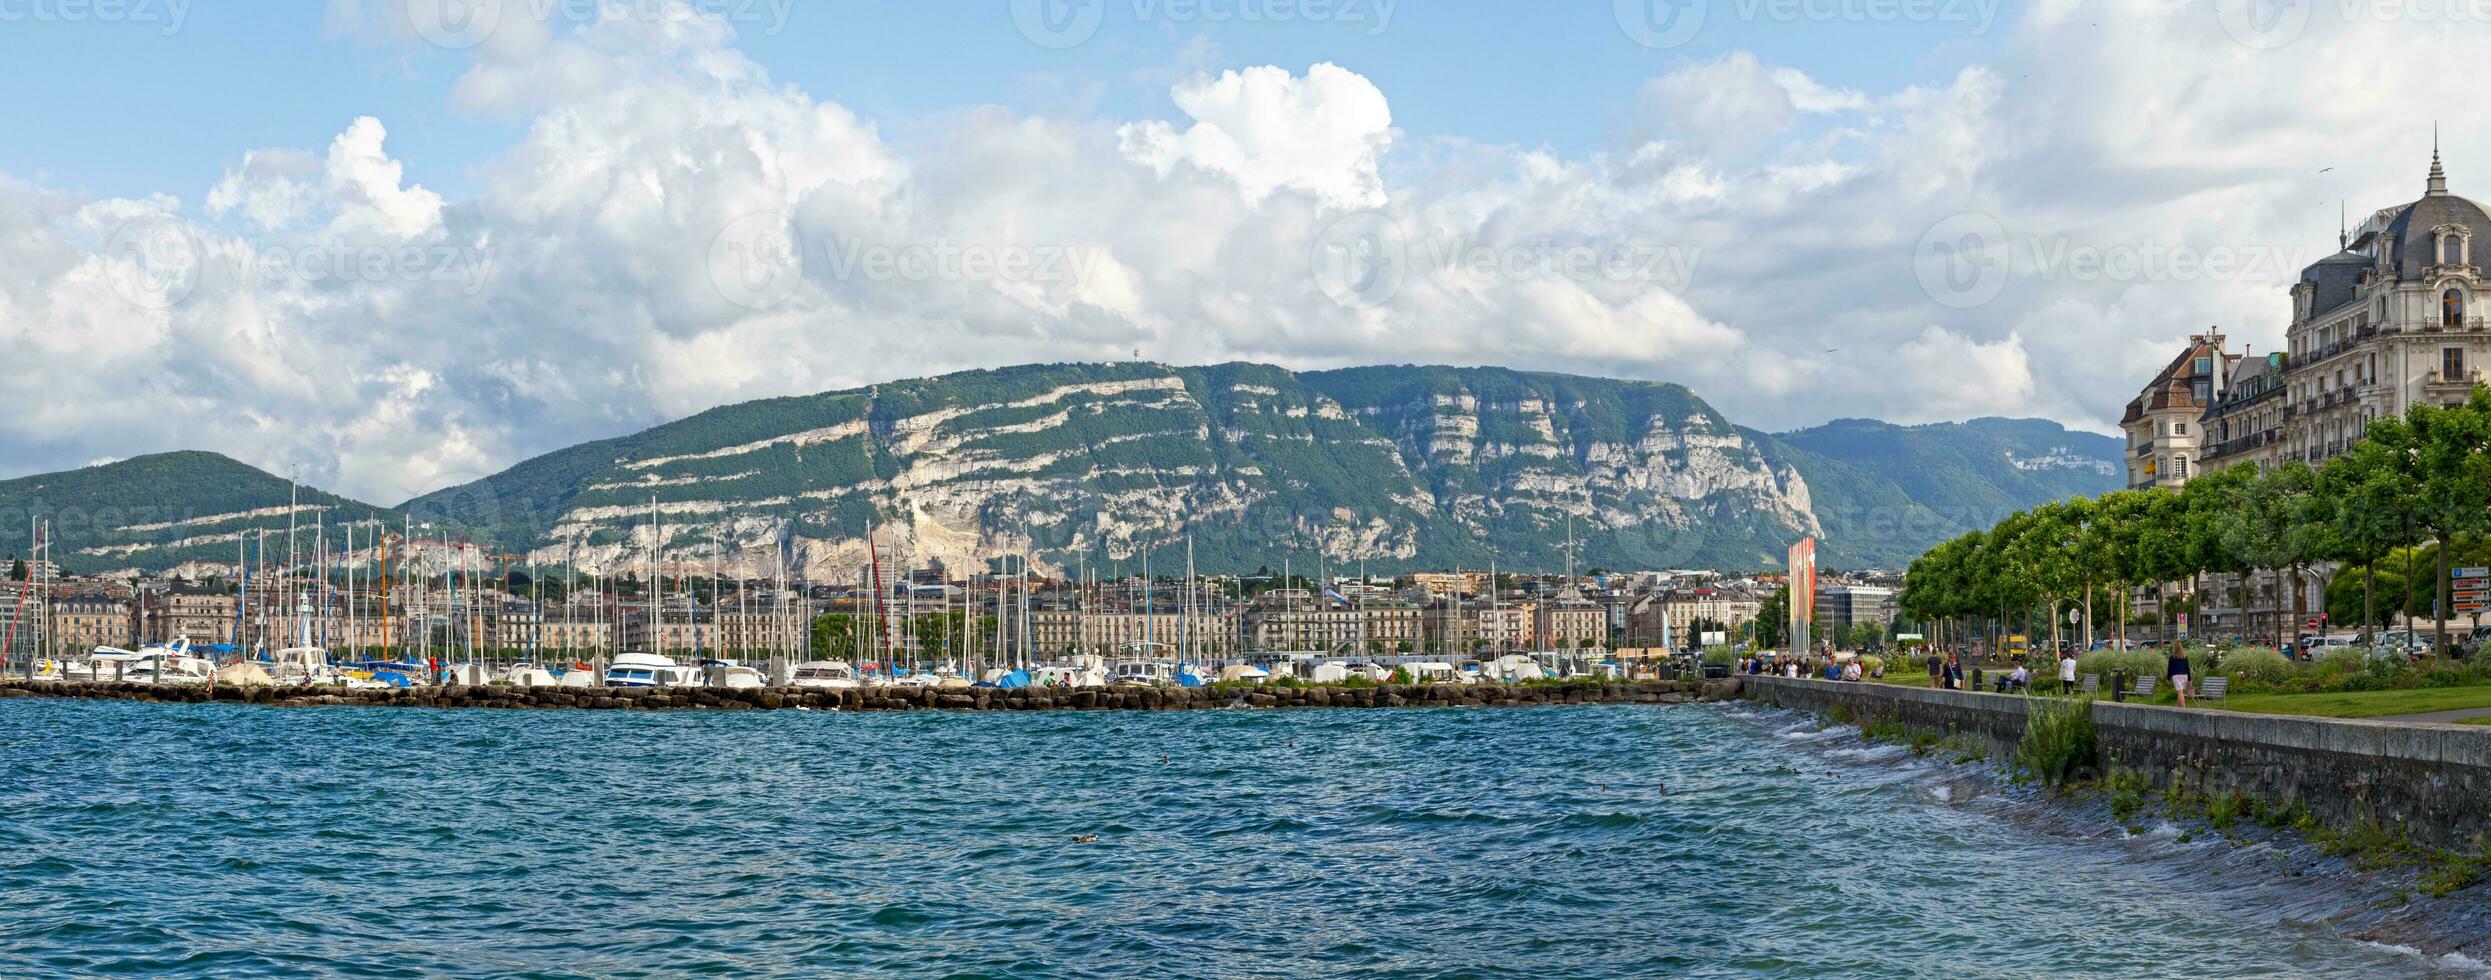 bateaux amarré à le Marina de Genève photo